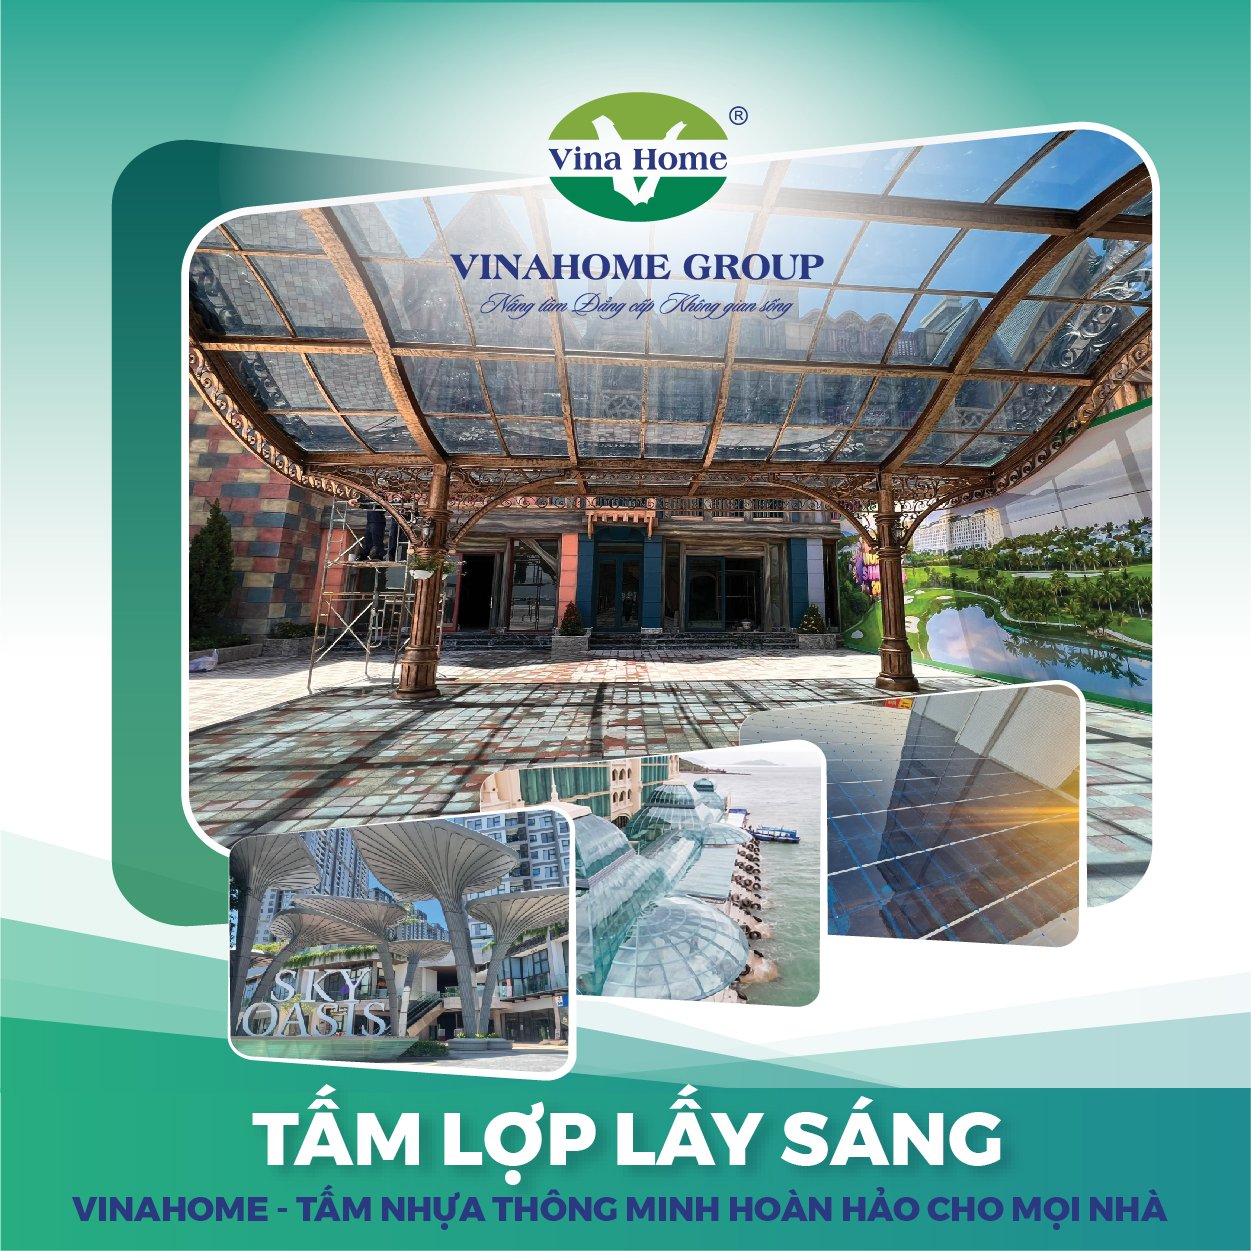 Laodong.vn - Vinahome Group – Thương hiệu đi đầu trong việc sản xuất tấm nhựa lấy sáng tại Việt Nam